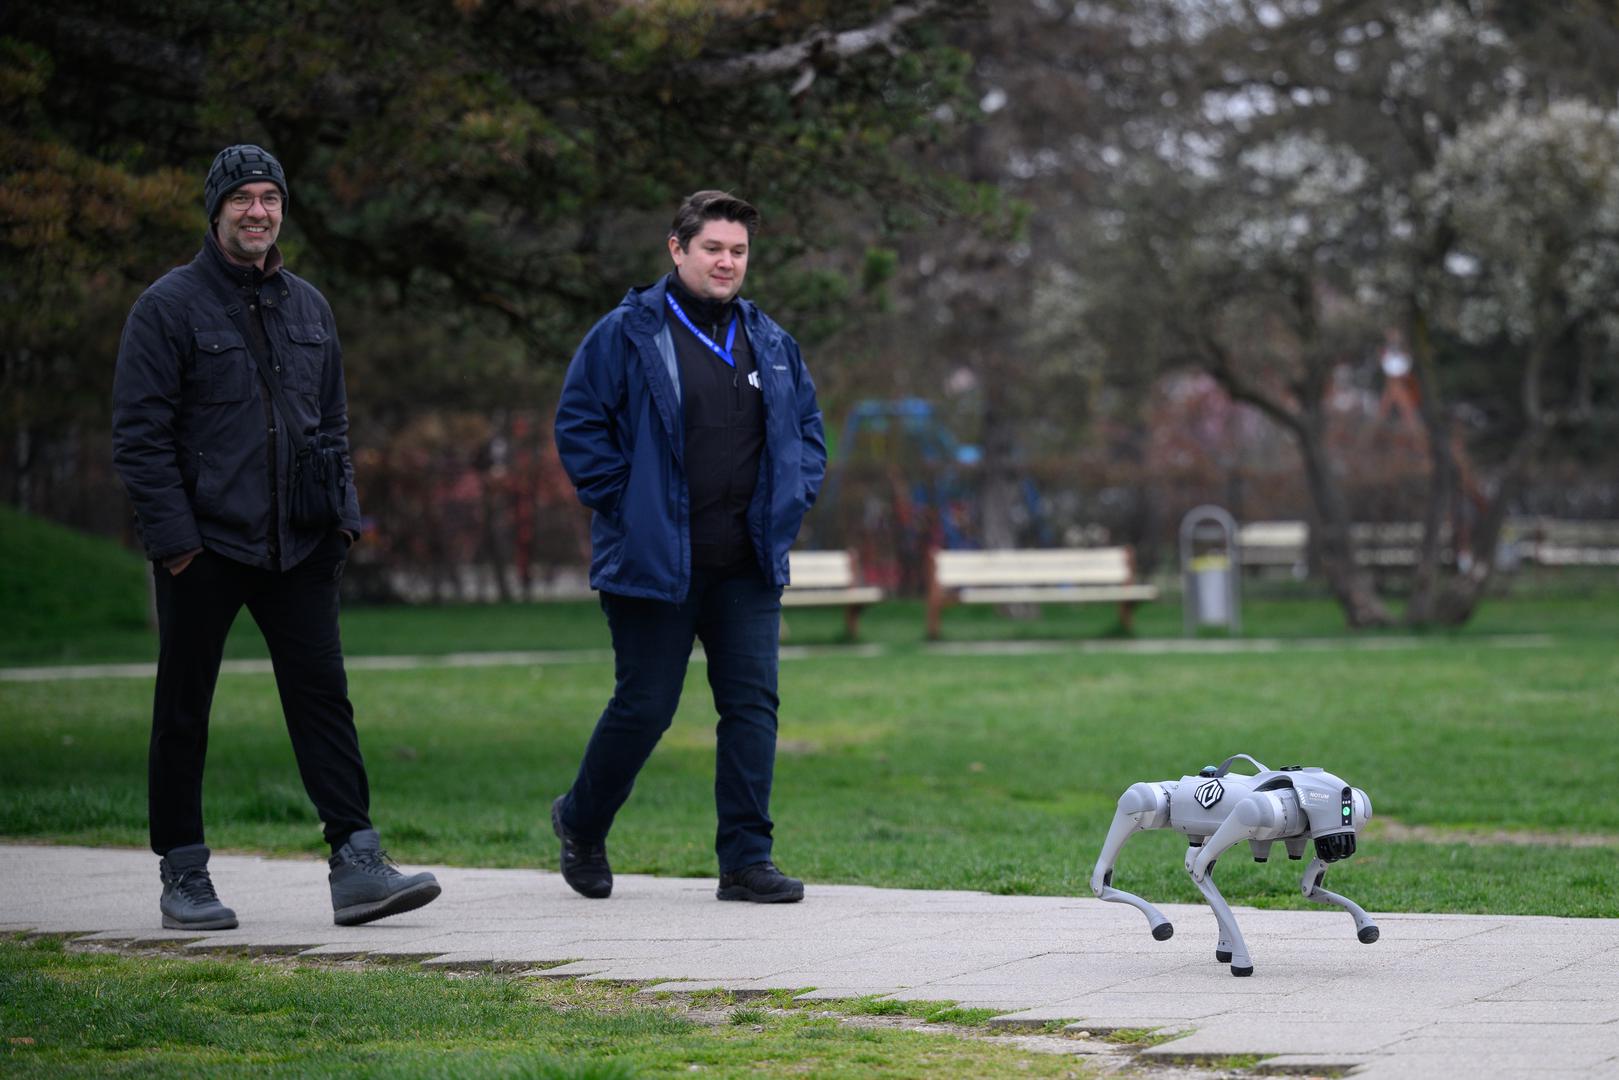 07.03.2024., Velika Gorica -  Milan Rajcevic, vlasnik i direktor tvrtke Notum Robotics sa suradnikom Ivanom Batinicem prosetao je Parkom dr. Franje Tudjmana u velikoj Gorici u drustvu robota psa. Za robota su podjednako bili zainteresirani prolaznici i njihovi ljubimci psi. Robot pas je komercijalni proizvod koji se radi po narudjbi, a ono sto je kod njega interesantno i unikatno su softverska rijesenja. Poanta je da ta platforma bude autonomna, bez ljudske intervencije i sa minimalnim odrzavanjem izvrsava zadatke prema svojem programu, da se snalazi u nepoznatim okolnostima, po nepoznatom terenu. Primjene su neogranicene, od sigurnosnih primjena, sluzbe spasavanja, nadzora te interakcije i edukacije. Puni se do 24 sata zbog tehnologije baterije i moze raditi do 3 sata, a trcati moze brzinom do 20 km/h. Trenutno nije vodootporan ali s vremenom moze postati i vodootporan i vatrootporan za siri spektar primjena. Ivan Batinic, Milan Rajcevic.
 Photo: Davor Puklavec/PIXSELL